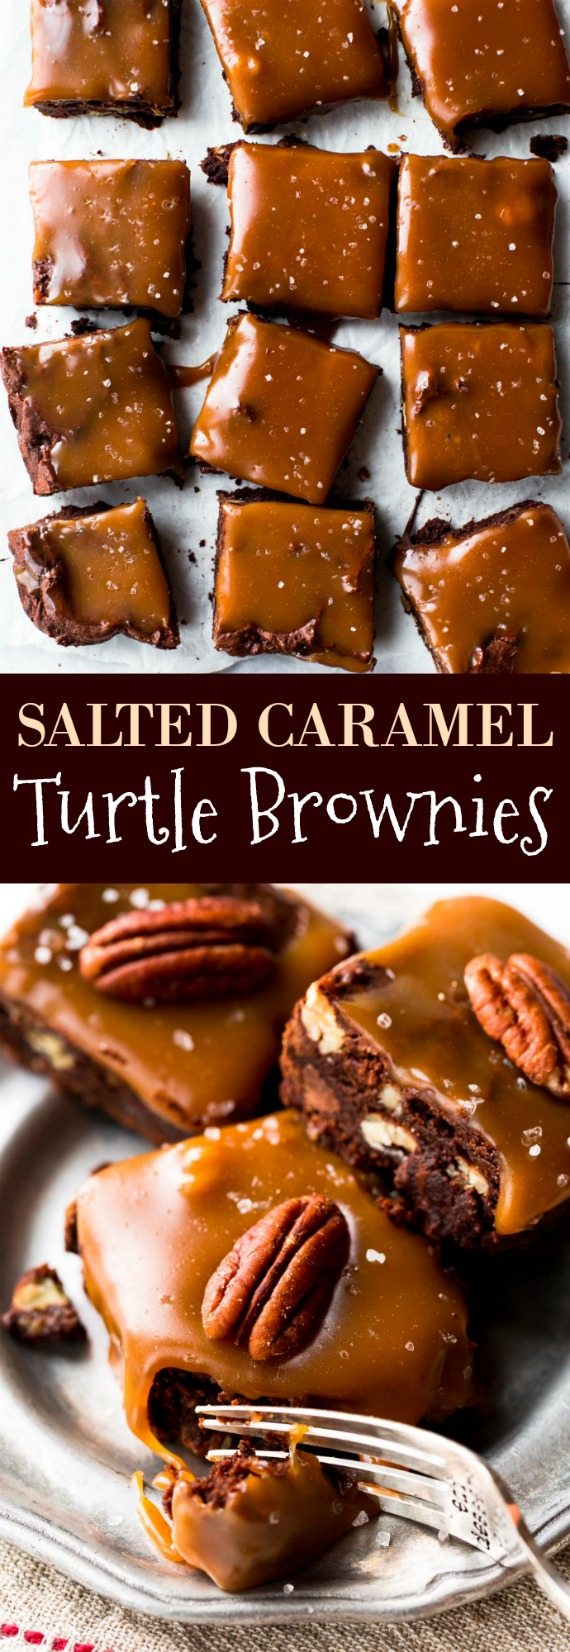 Comment faire des brownies de tortue au caramel salé avec du caramel salé maison et des brownies dans un bol !! Recette sur sallysbakingaddiction.com